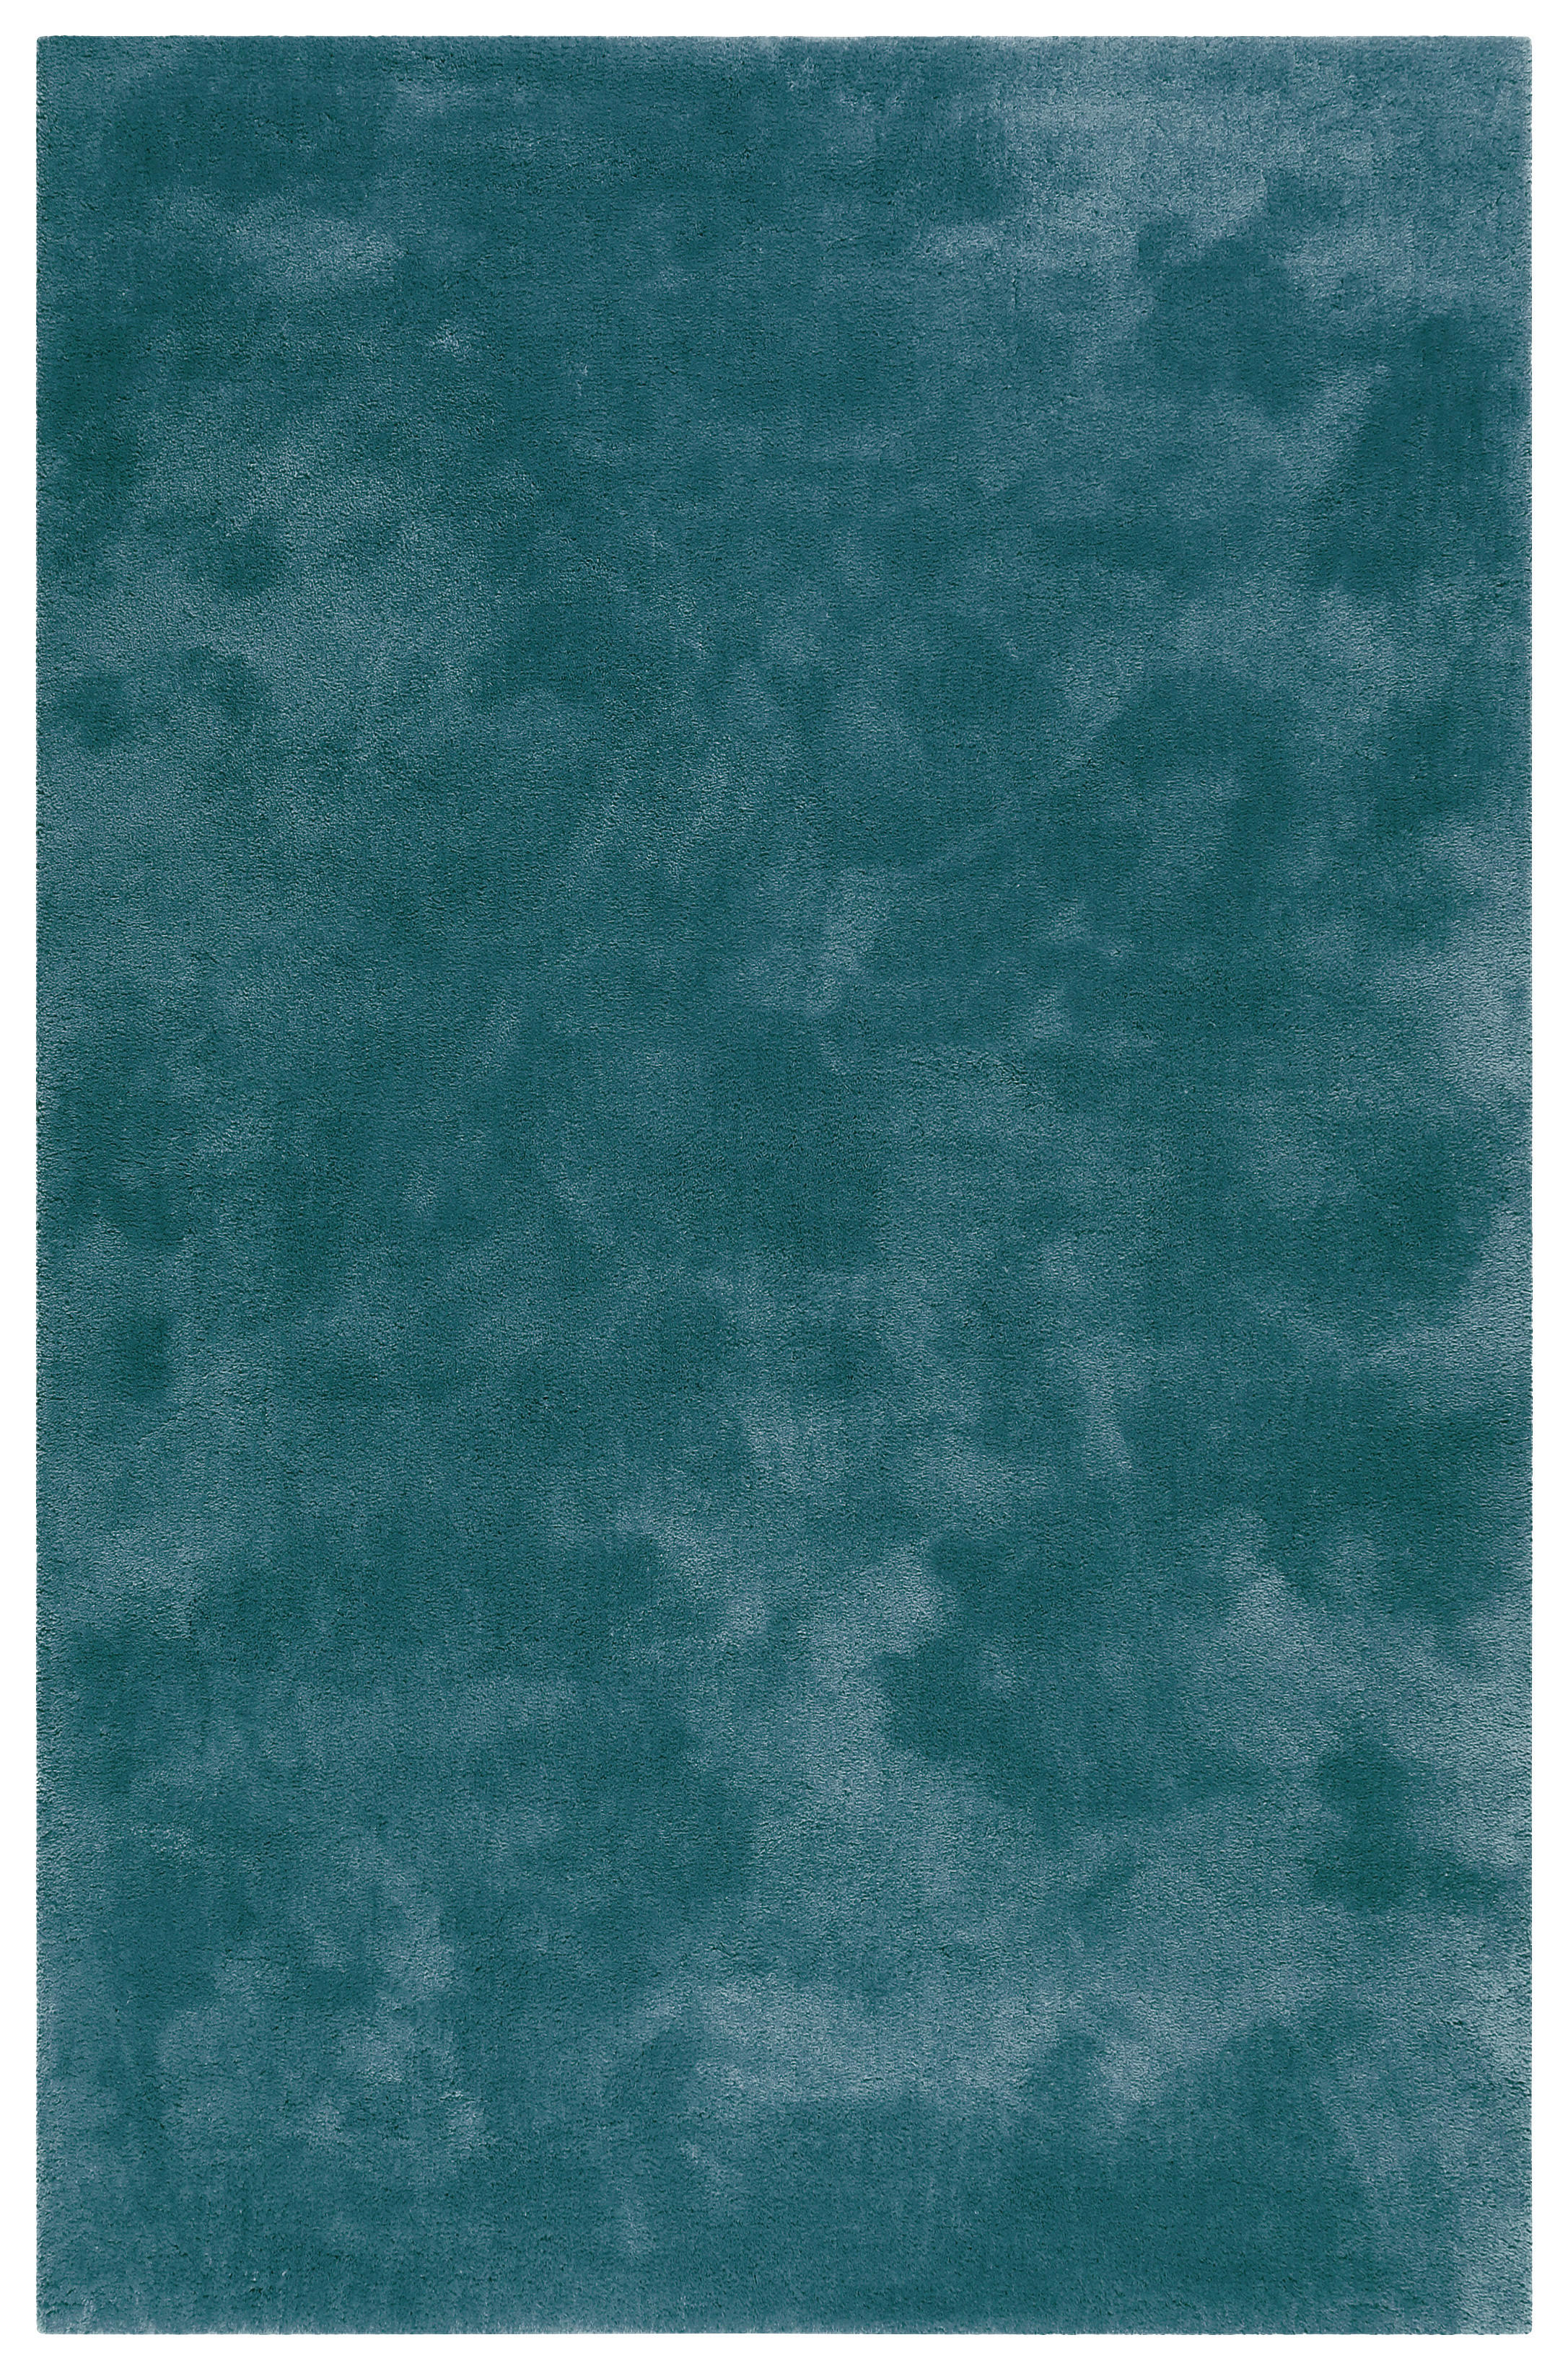 HOCHFLORTEPPICH 70/140 cm Relaxx  - Smaragdgrün, Basics, Textil (70/140cm) - Esprit